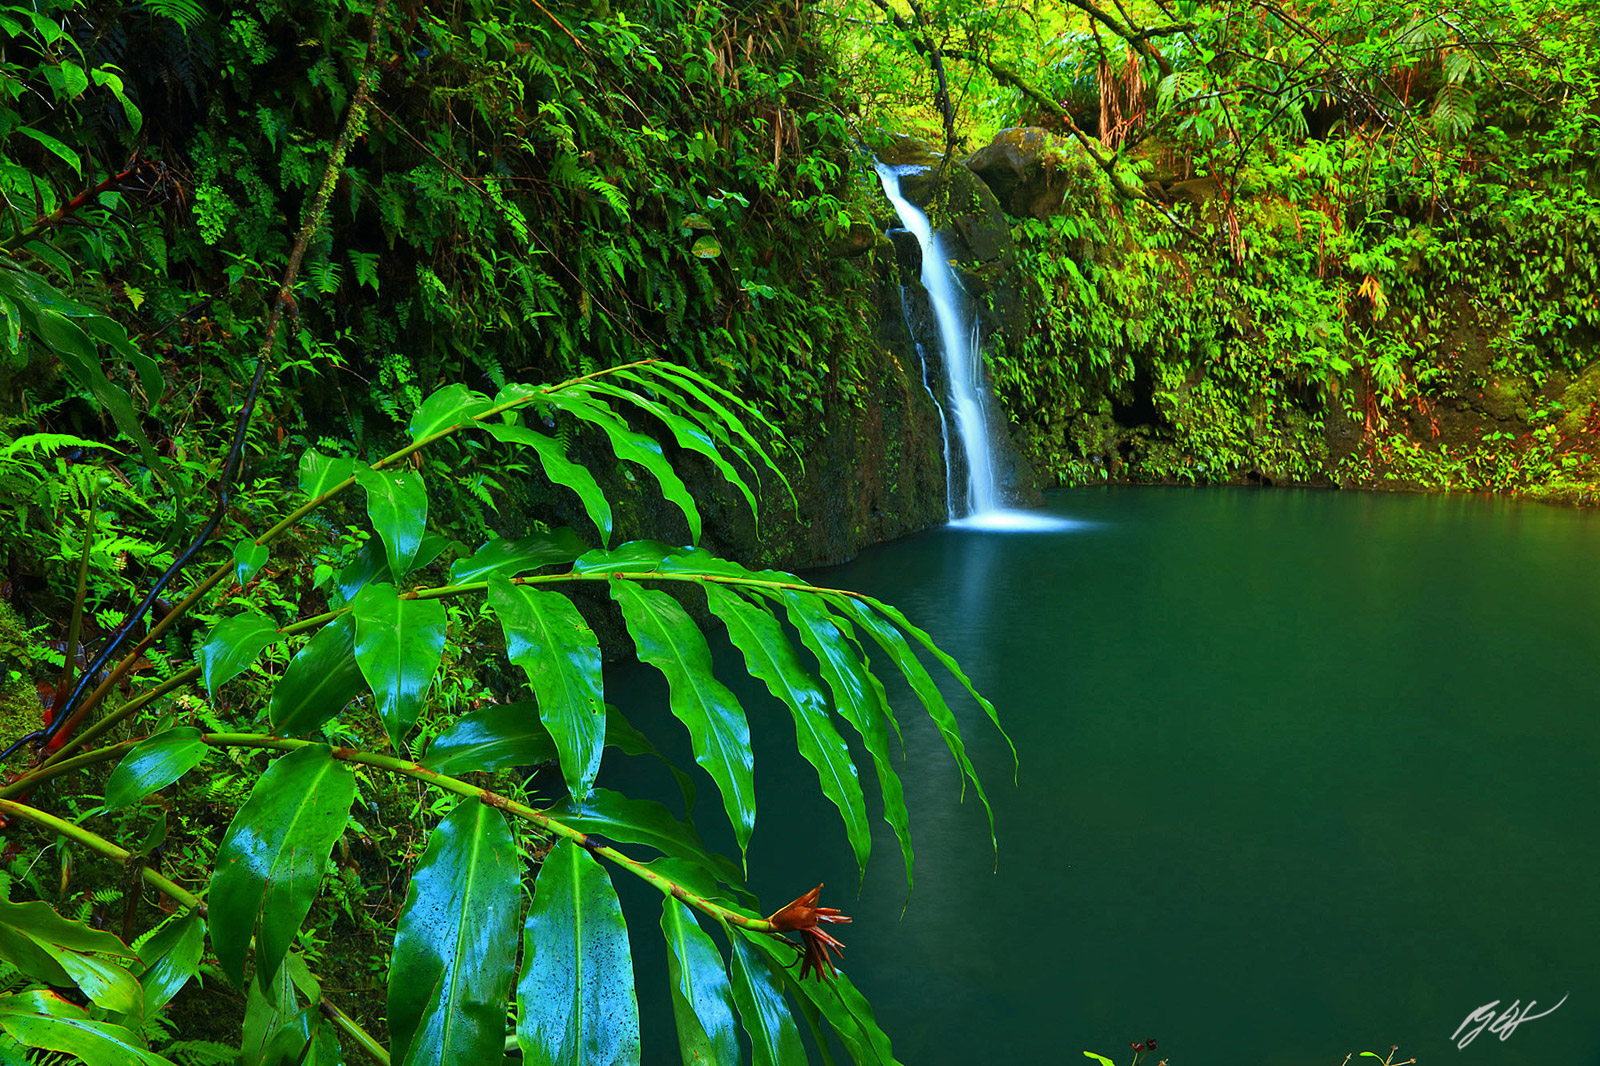 Secret Waterfall along the Road to Hana on the island of Maui, Hawaii